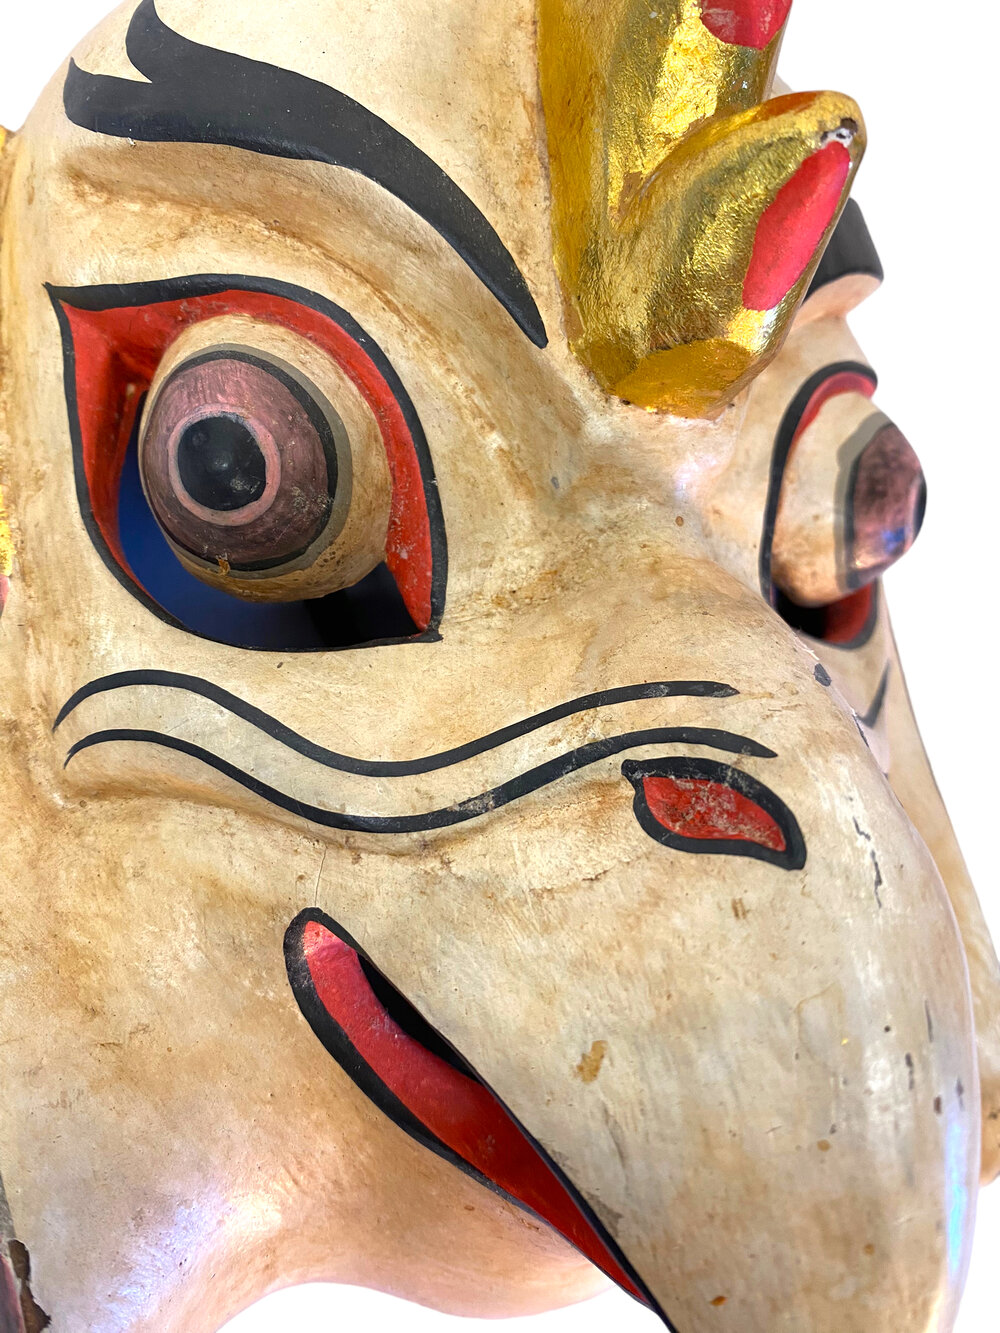 åbning fysisk At give tilladelse Hand Carved Balinese Wooden Rooster Mask — Mercer Island Thrift Shop